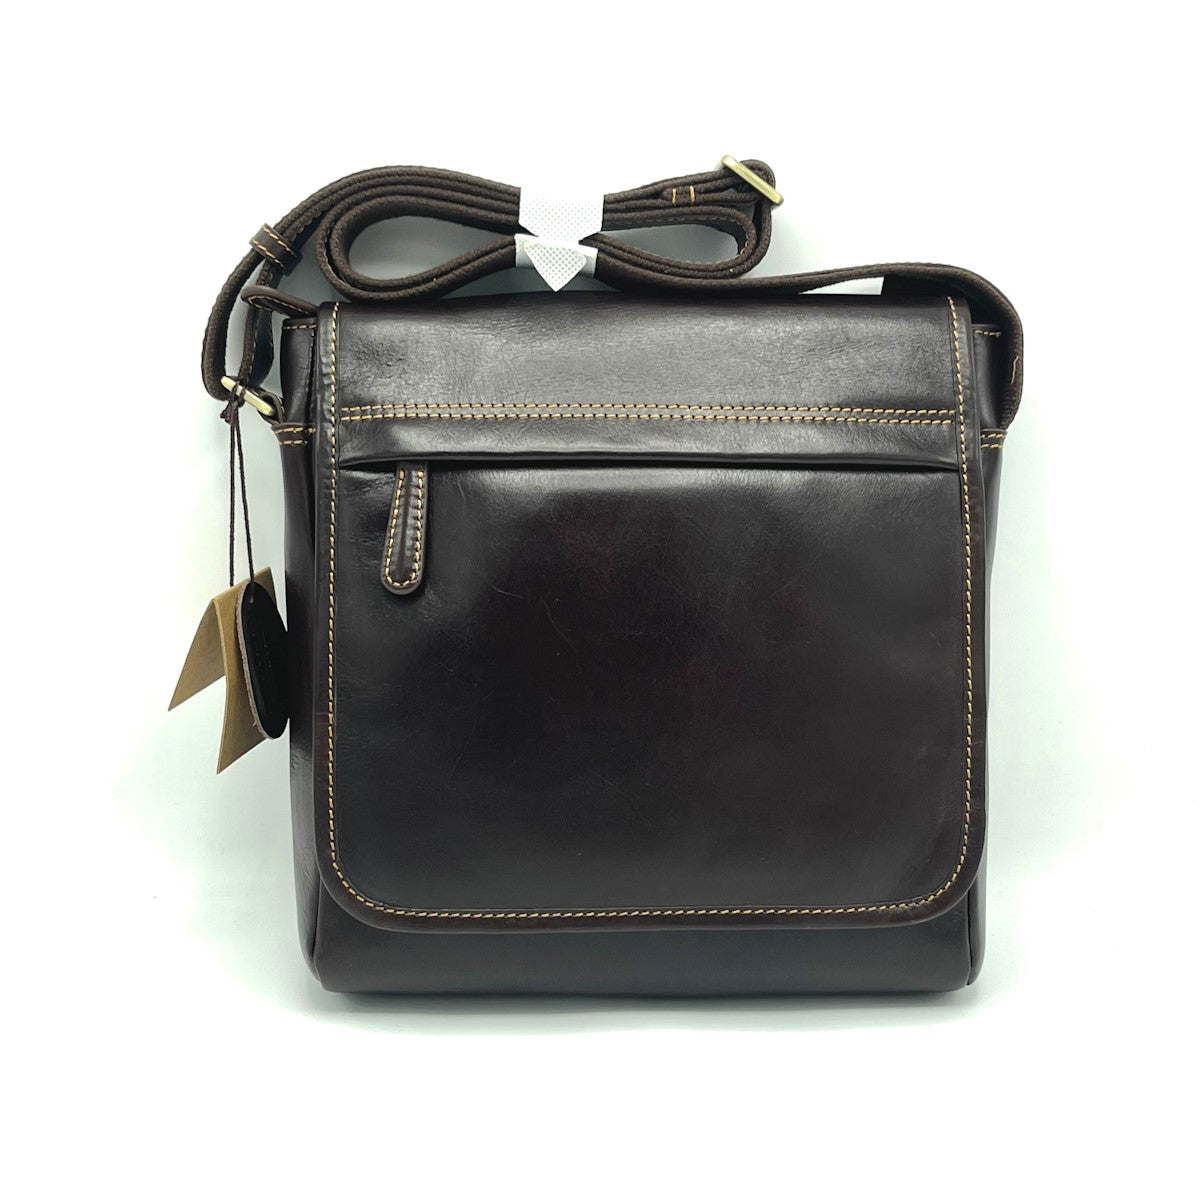 Buffered leather shoulder bag, for men, art. TA4805